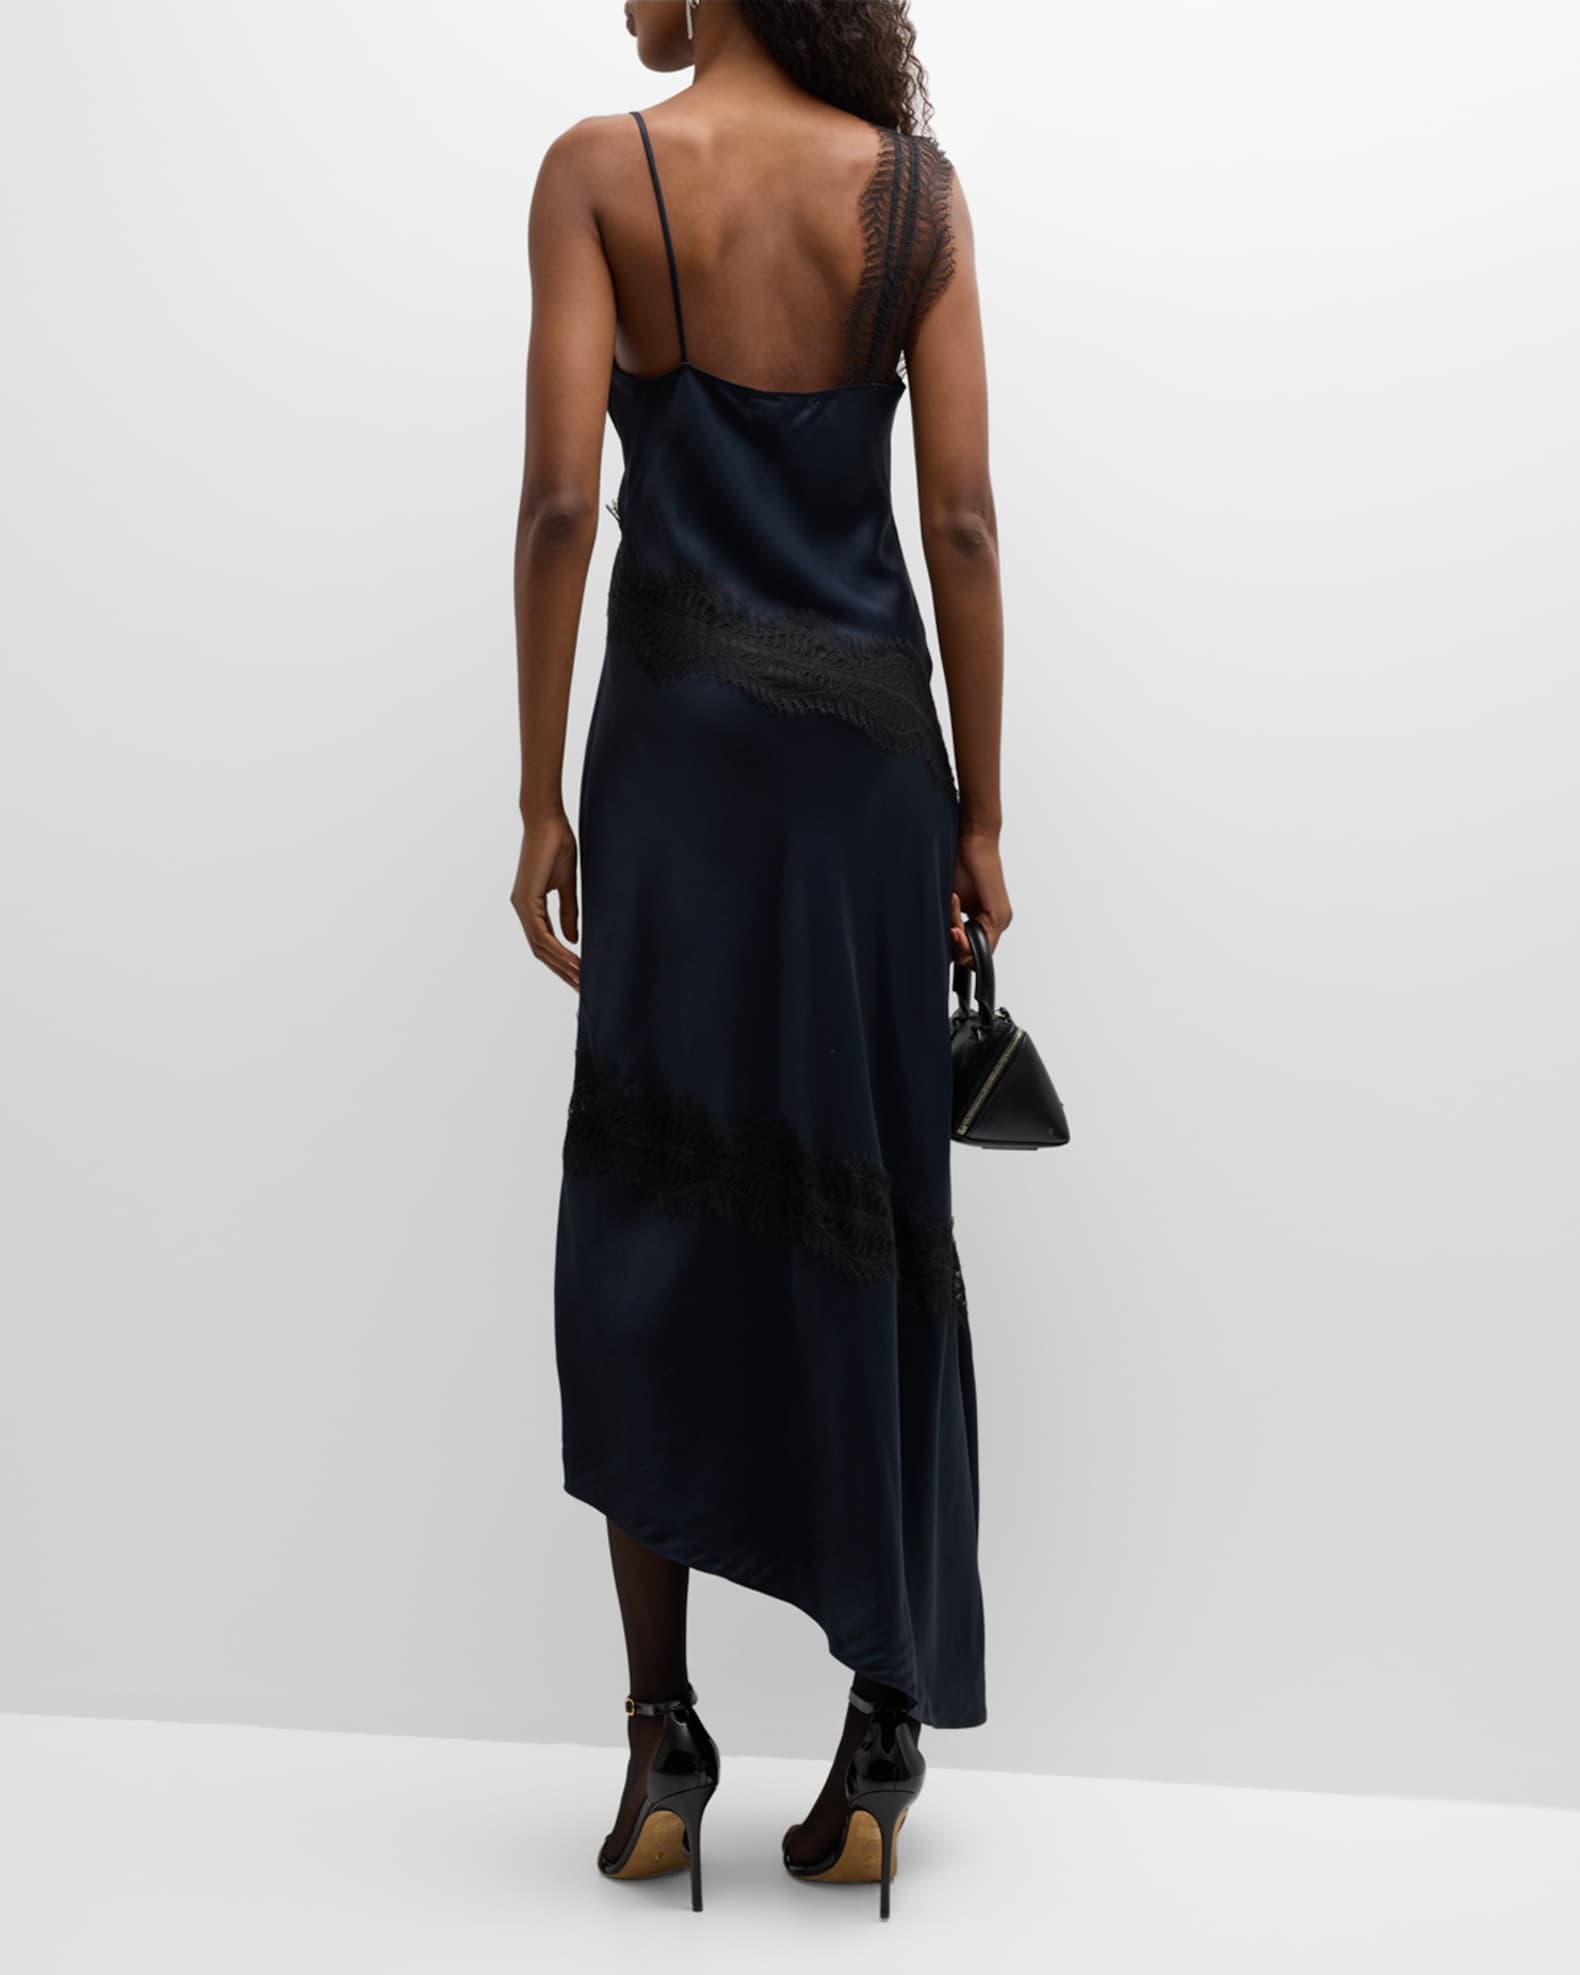 A.L.C. Soleil Satin Lace Asymmetric Maxi Dress | Neiman Marcus